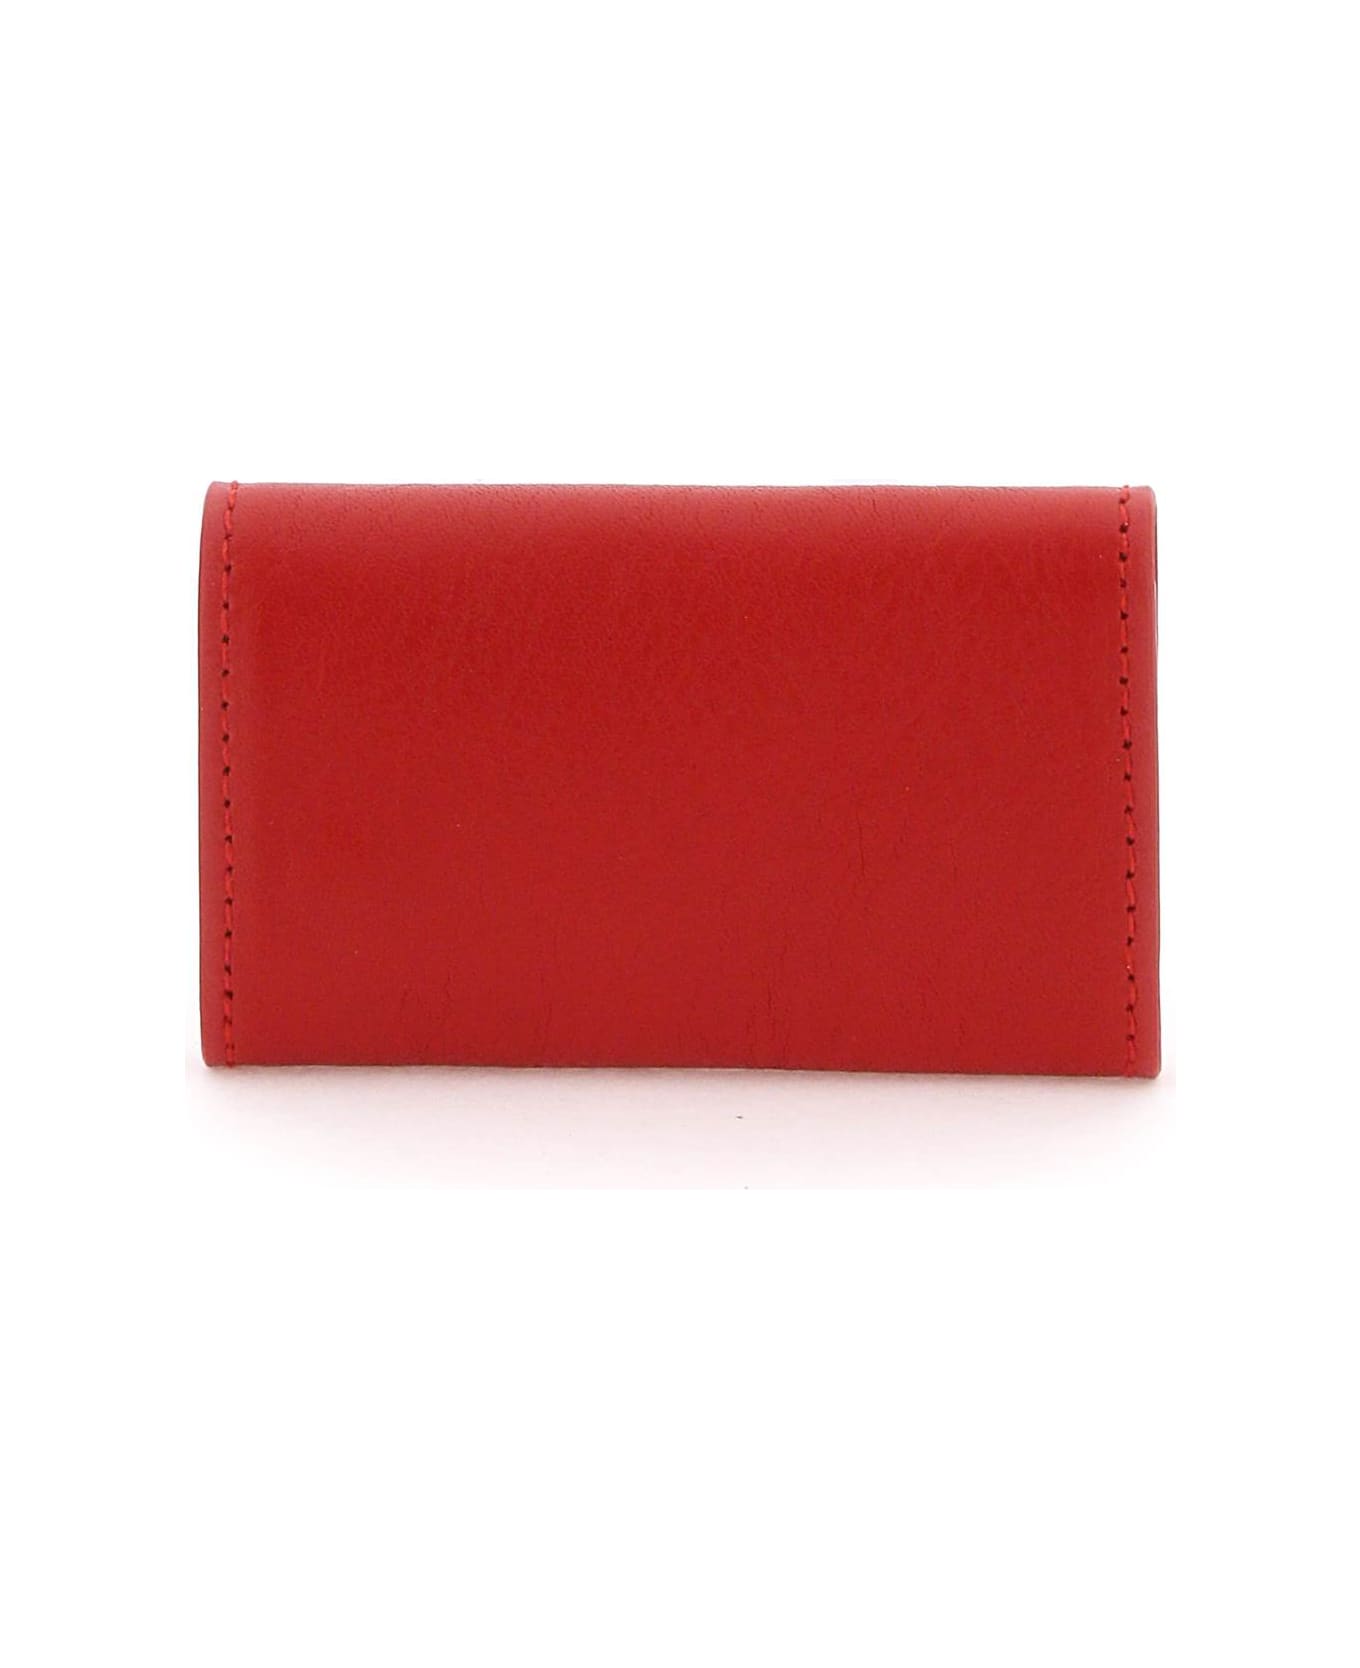 Il Bisonte Leather Key Holder - CASTAGNO ROSA (Red)